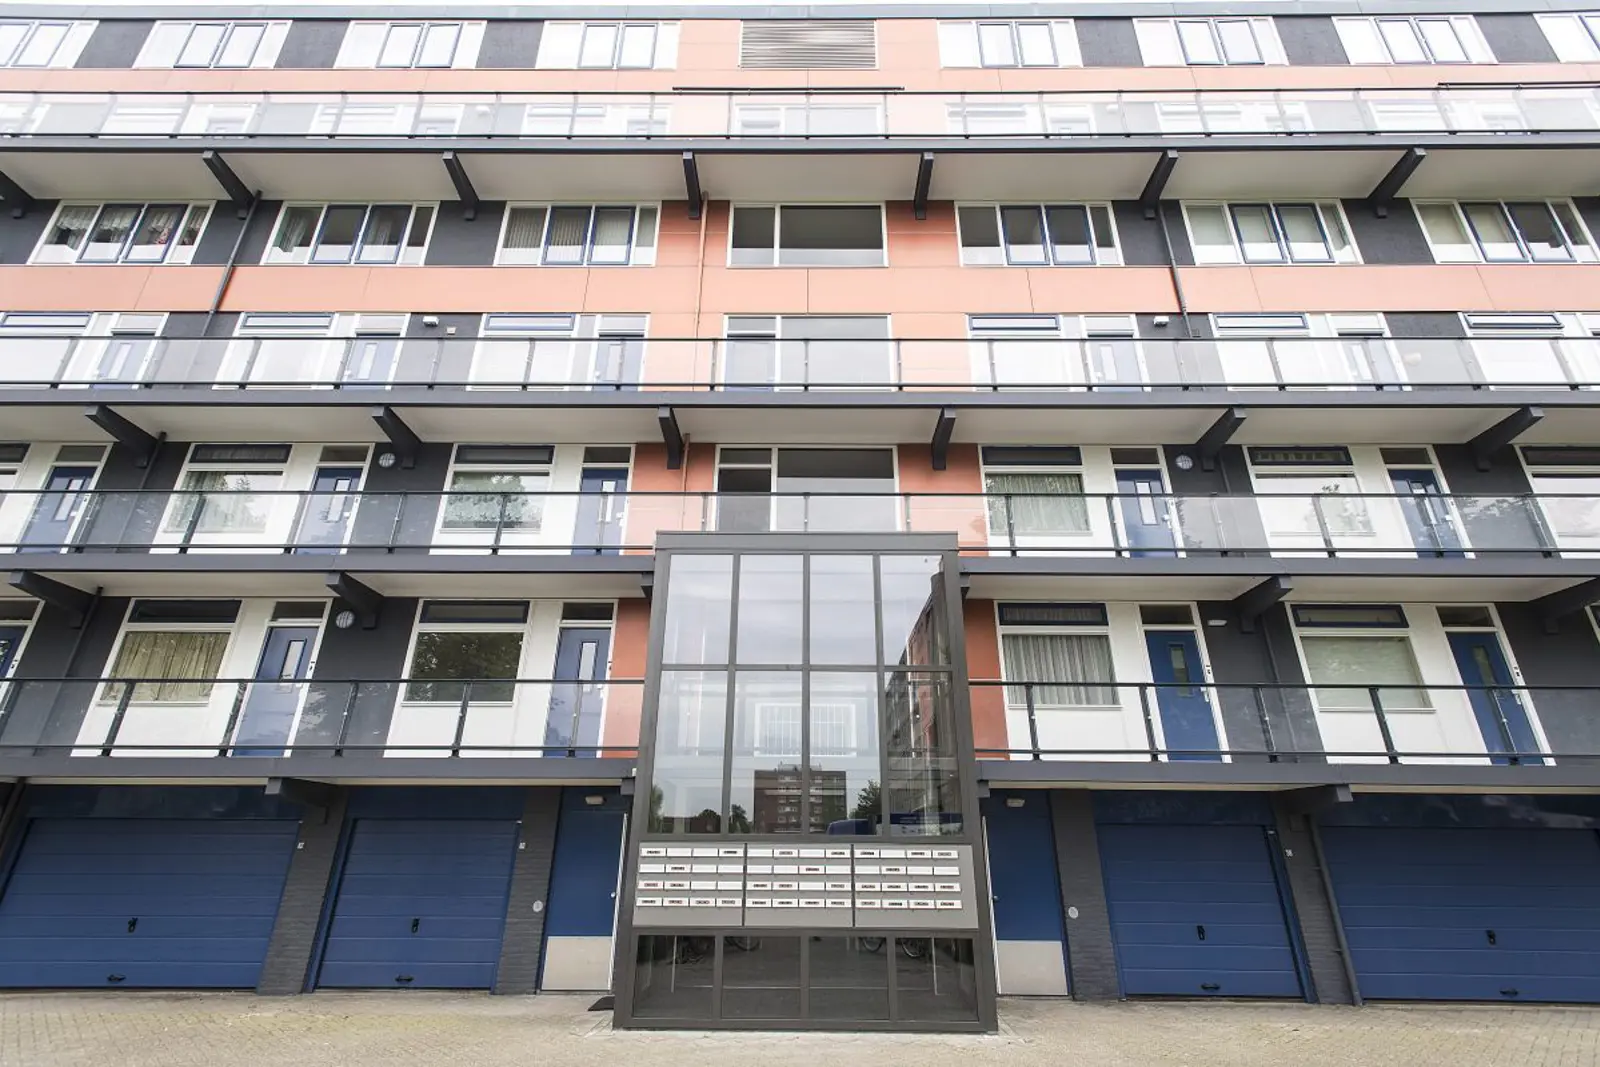 Balladestraat Nijmegen | Groot onderhoud aan 48 woningen | Hendriks bedenkt, bouwt, beheert